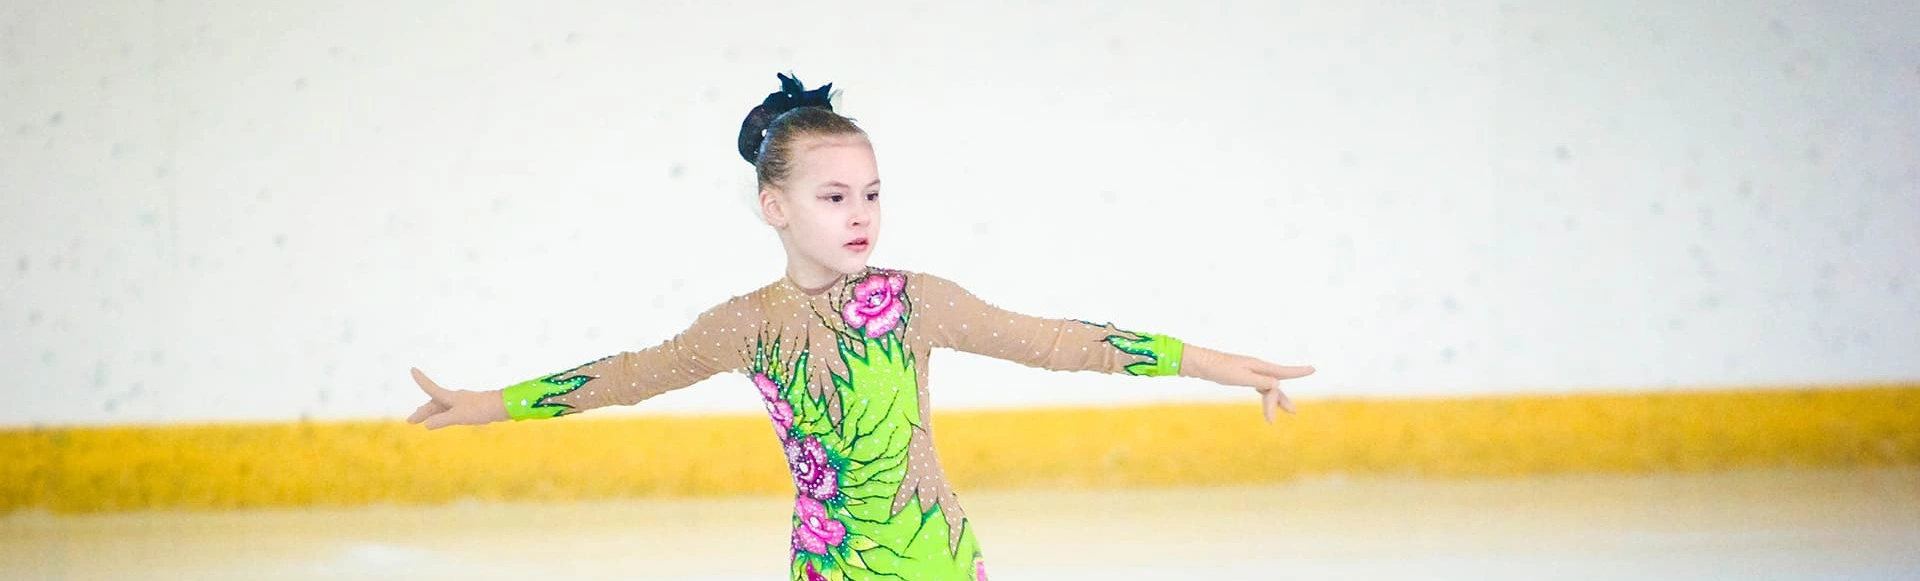 В Оренбурге продолжаются Всероссийские соревнования по фигурному катанию памяти В. С. Черномырдина